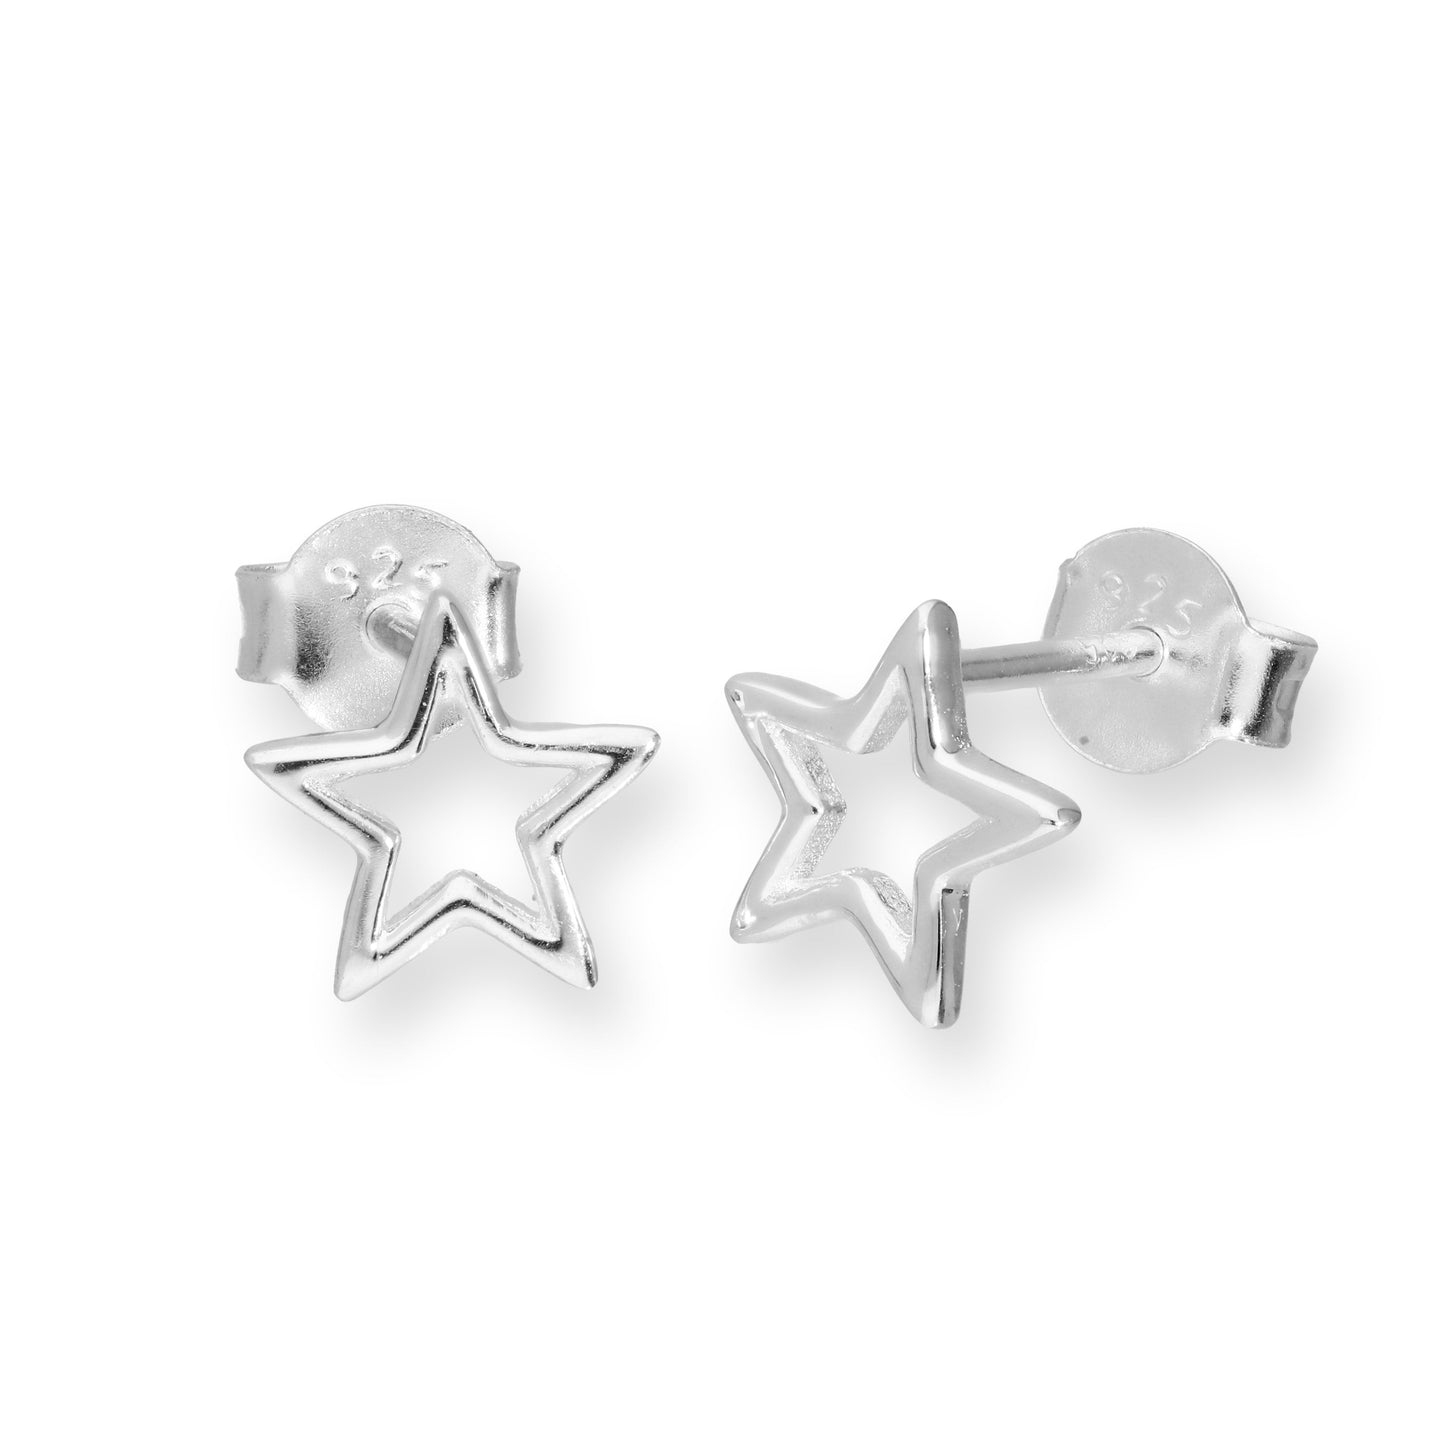 Sterling Silver Open Star Stud Earrings